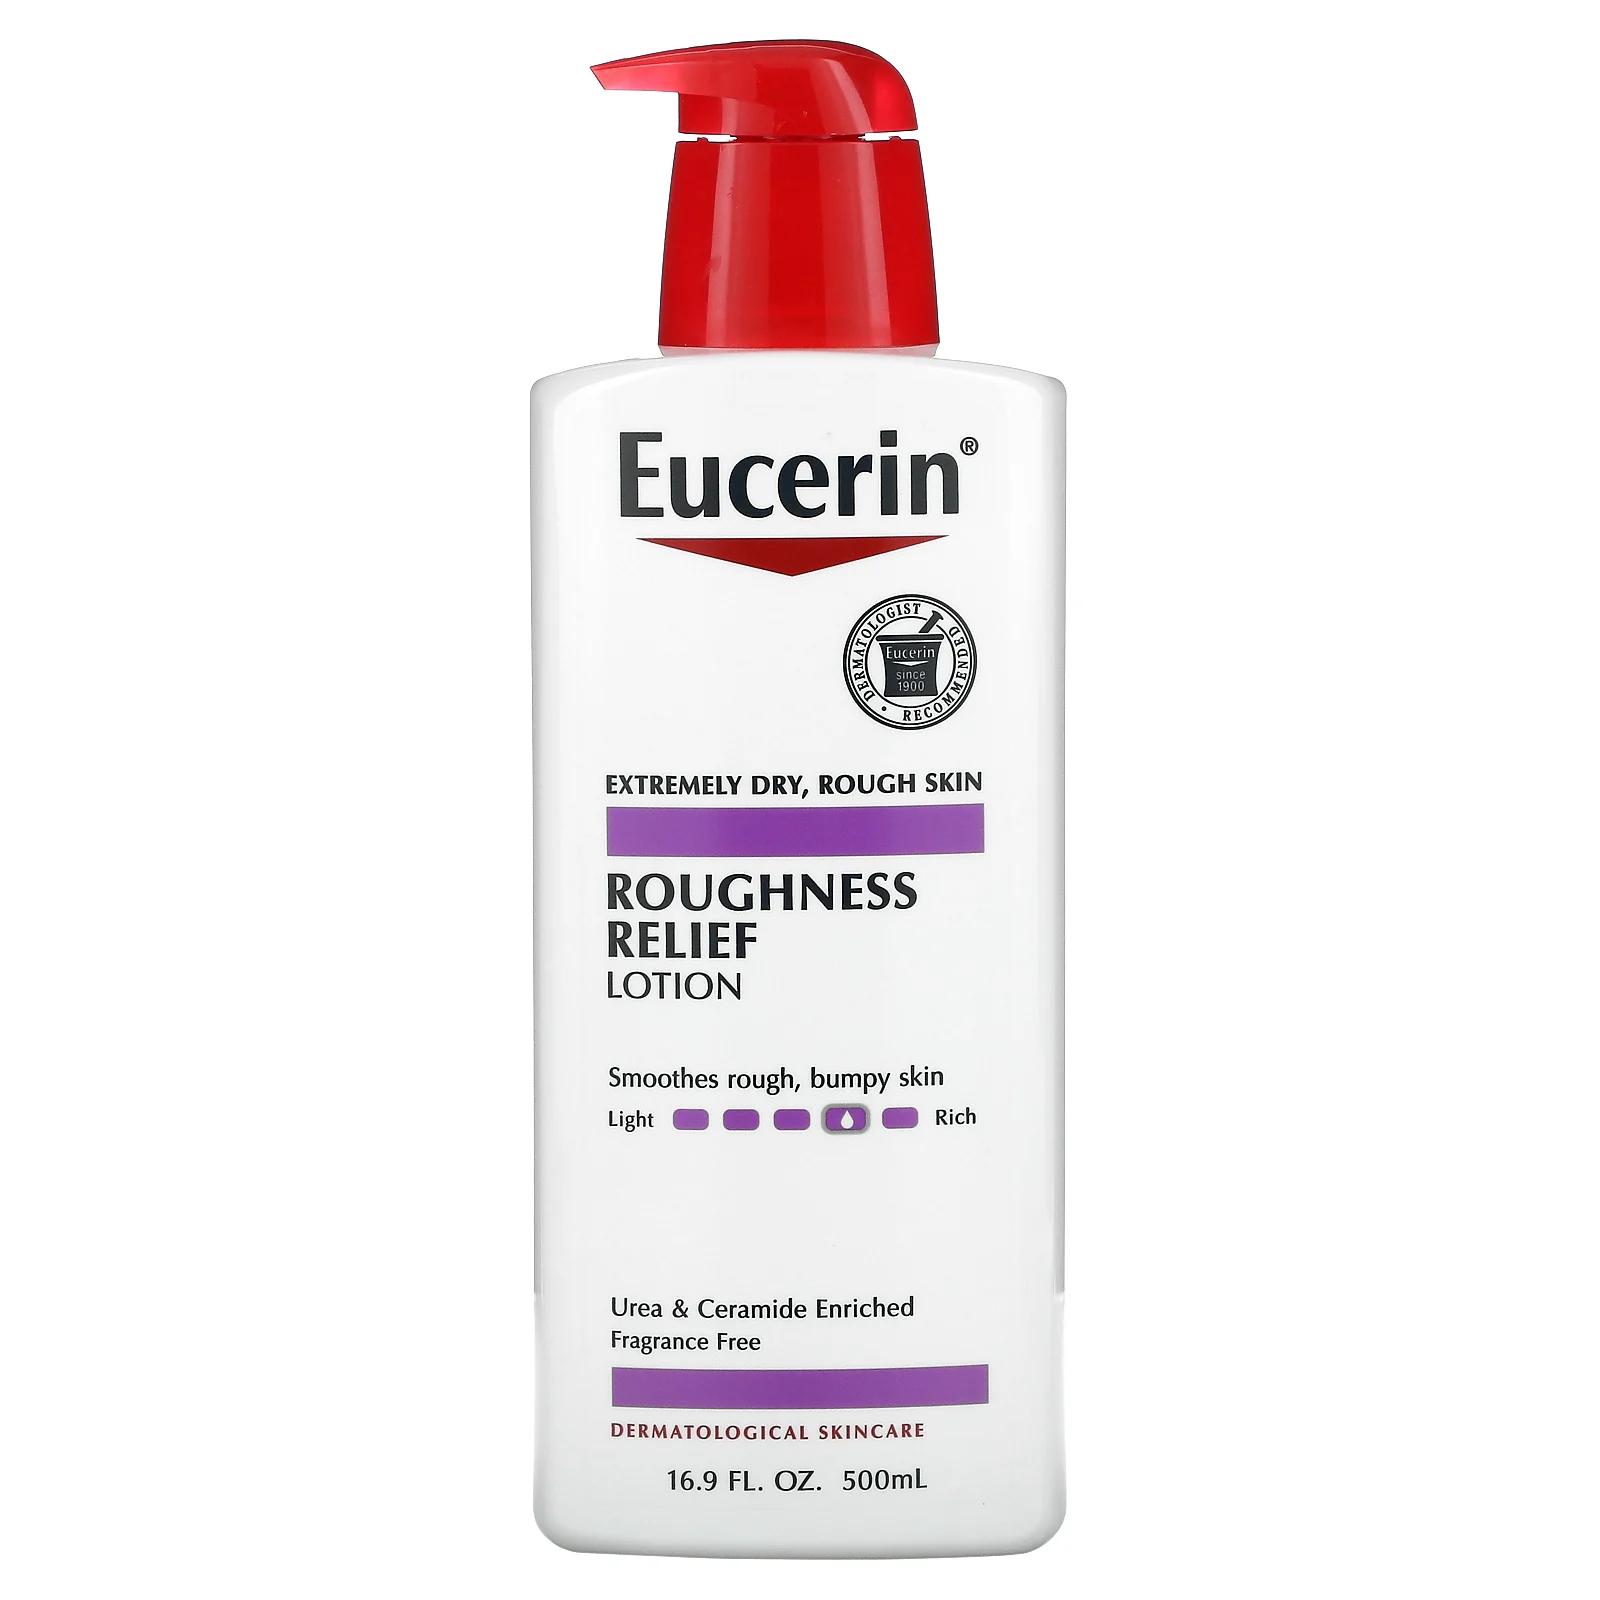 eucerin успокаивающий лосьон для кожи без отдушек 500 мл 16 9 жидк унций Eucerin лосьон для смягчения шершавой кожи без отдушек 500 мл (16,9 жидк. унций)